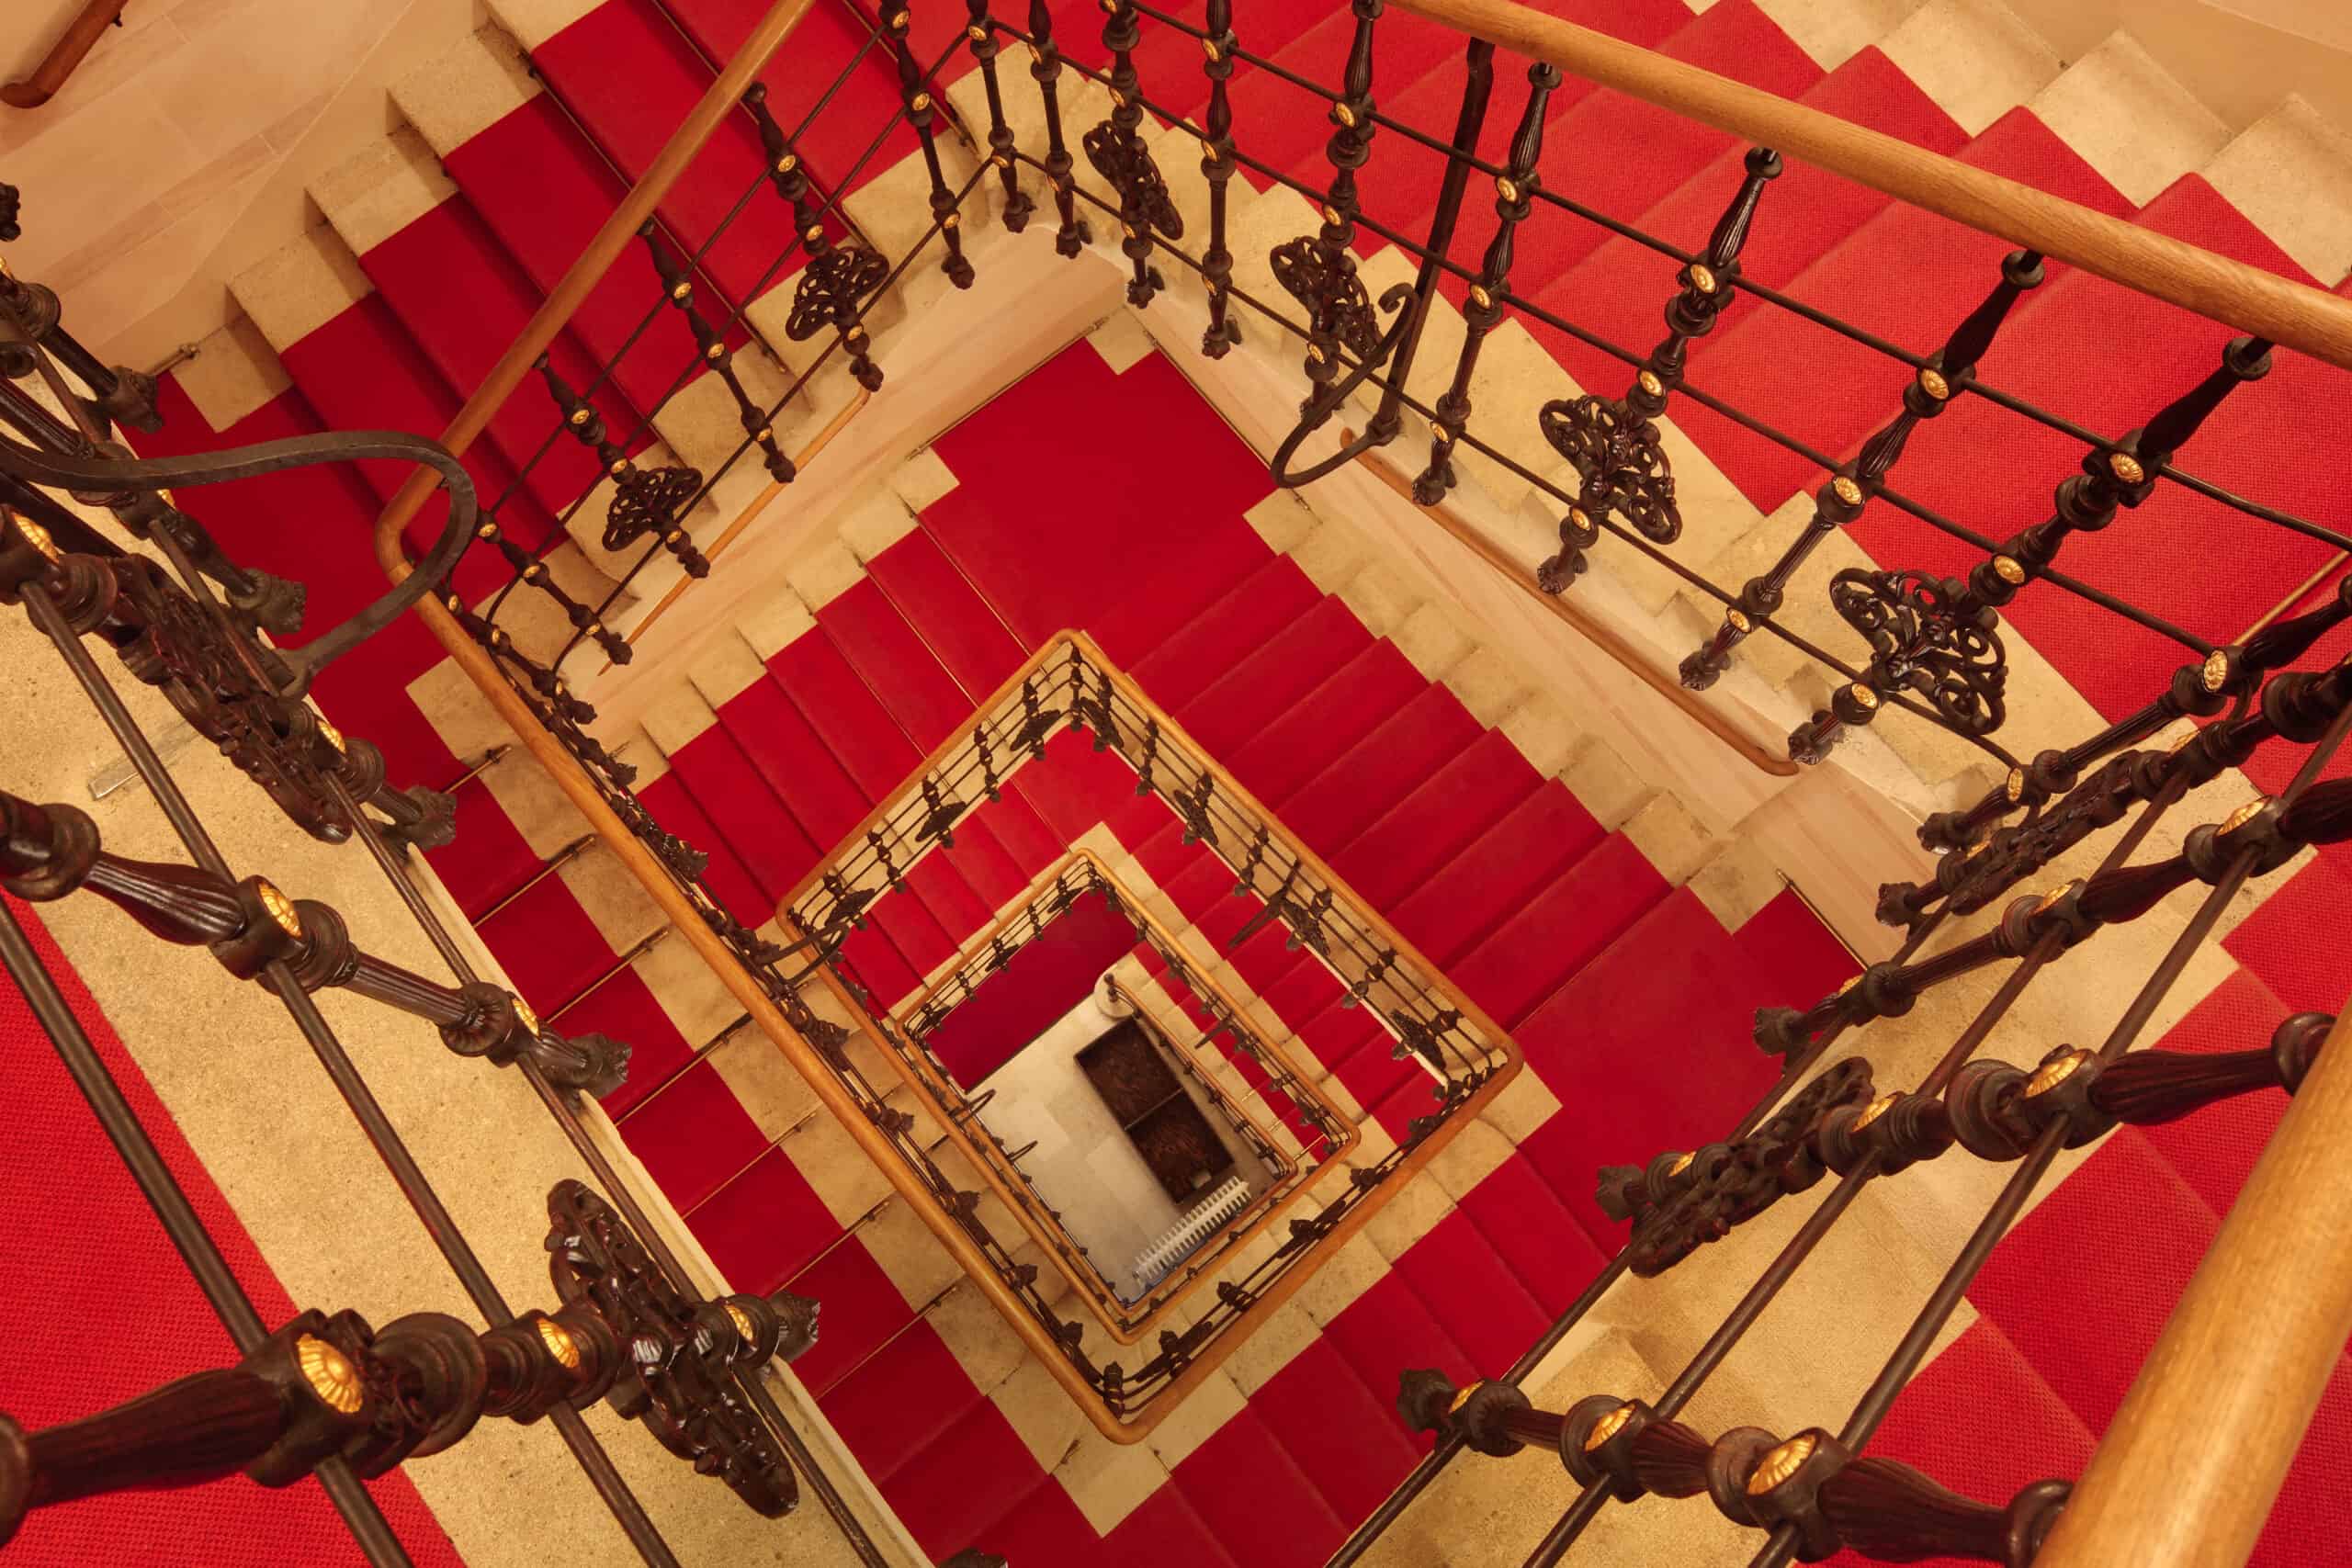 Musikverein Wien, roter Teppich, Stiegenaufgang zum Grossen Saal und Brahmssaal